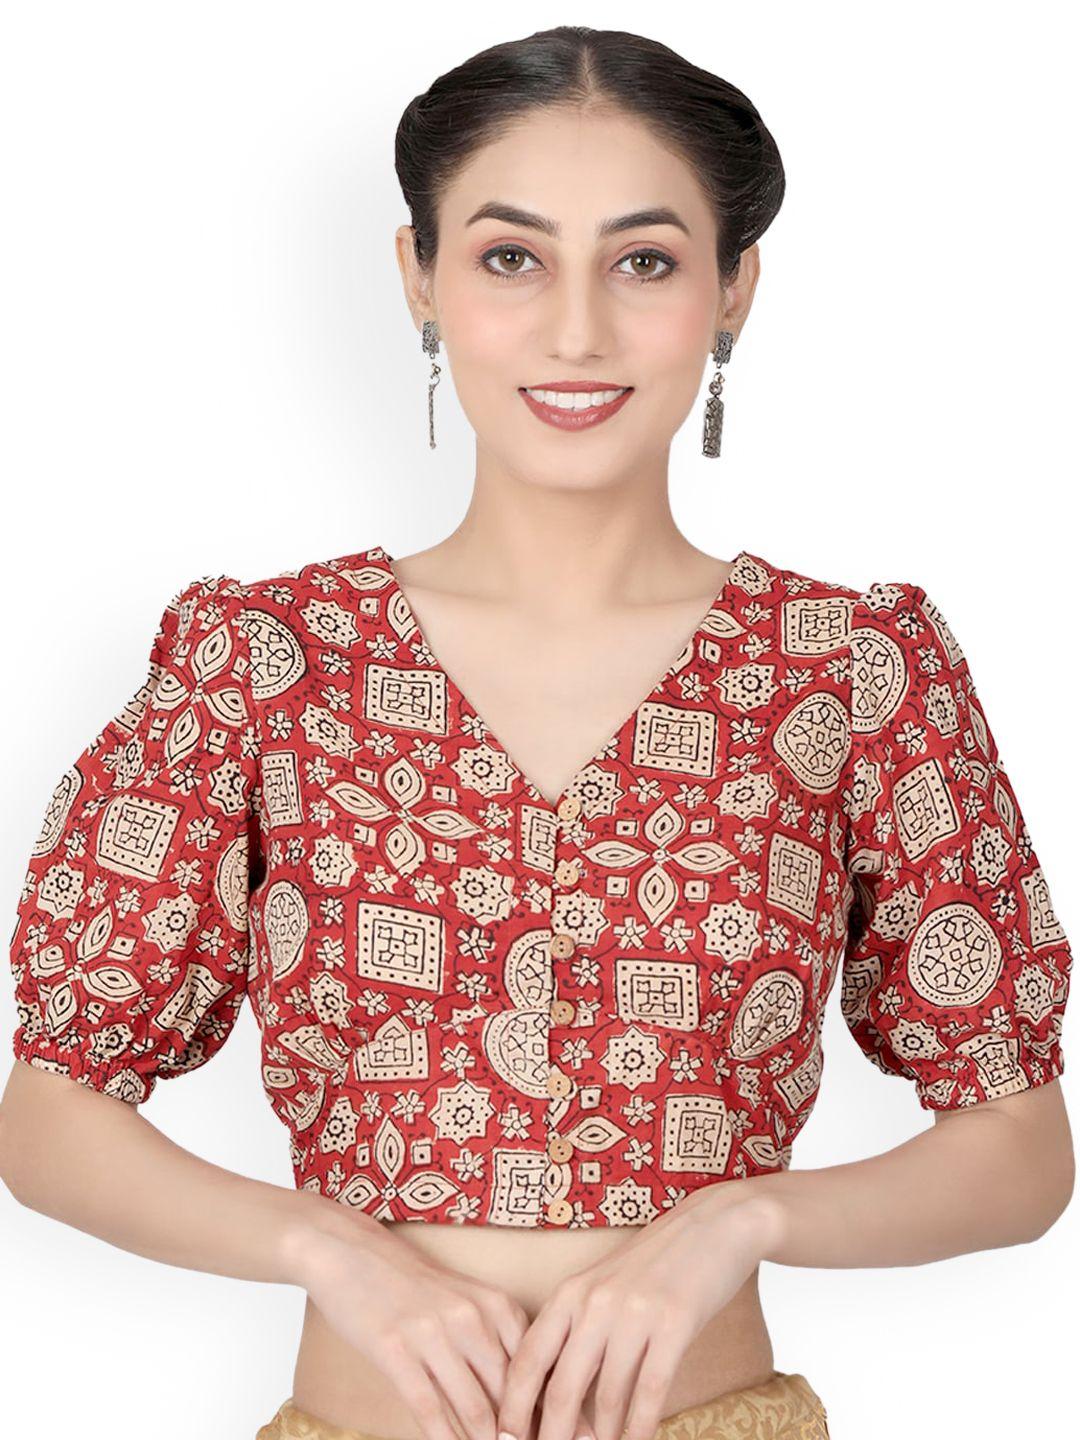 llajja pure cotton v-neck non padded saree blouse